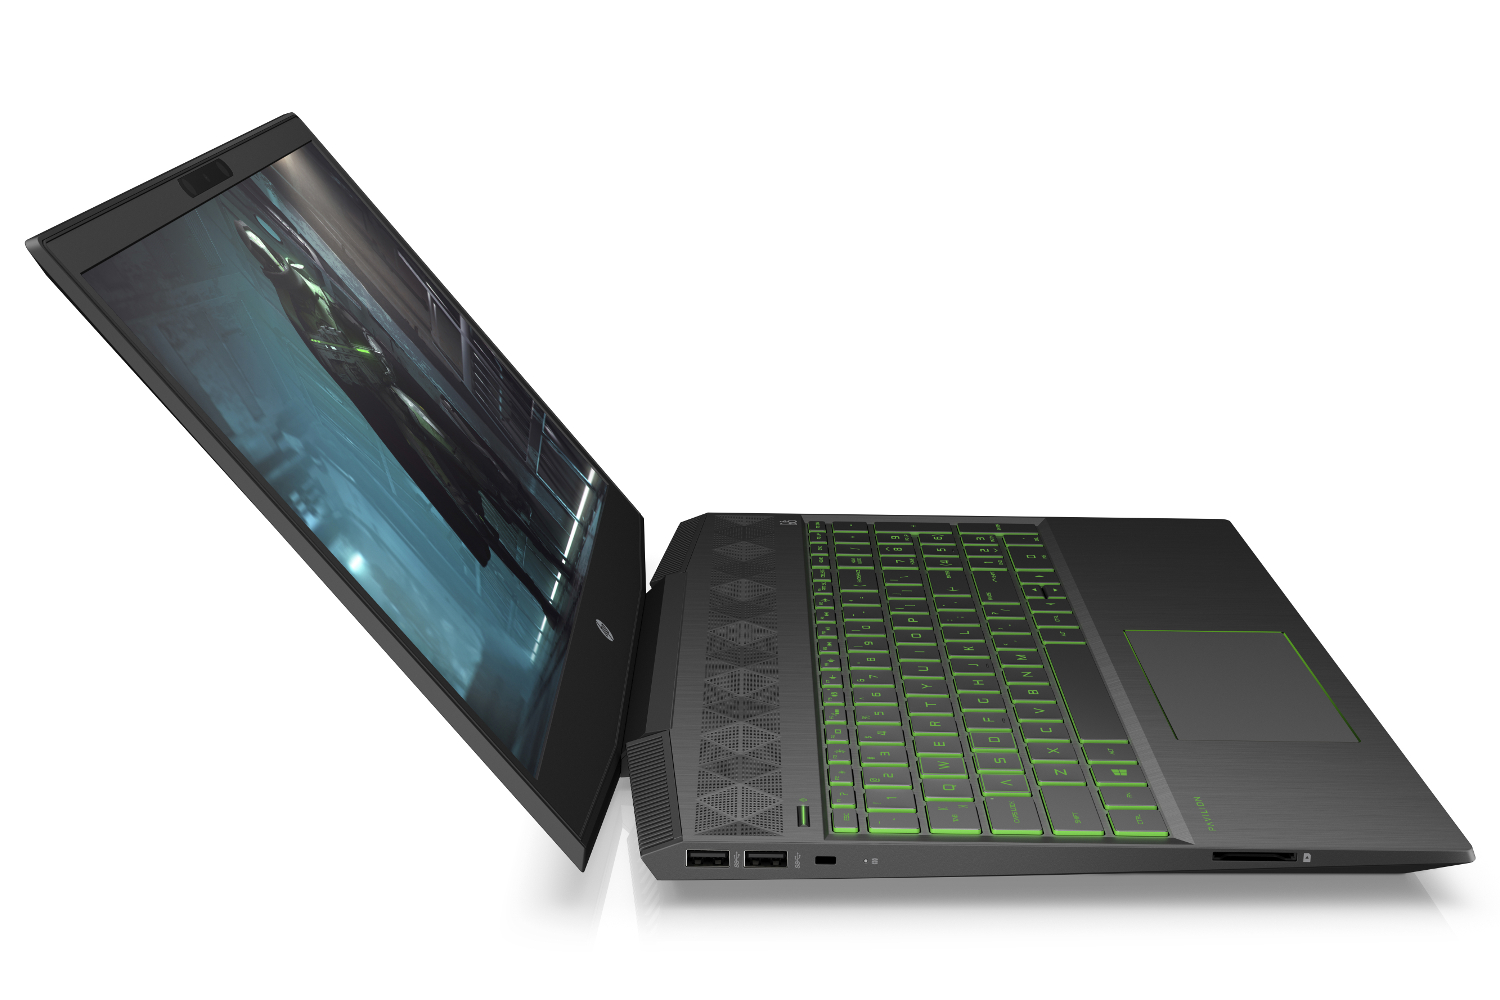 Kedelig lugtfri voksenalderen HP's Pavilion Gaming Notebooks, Desktops Target Budget-Tight Wallets |  Digital Trends